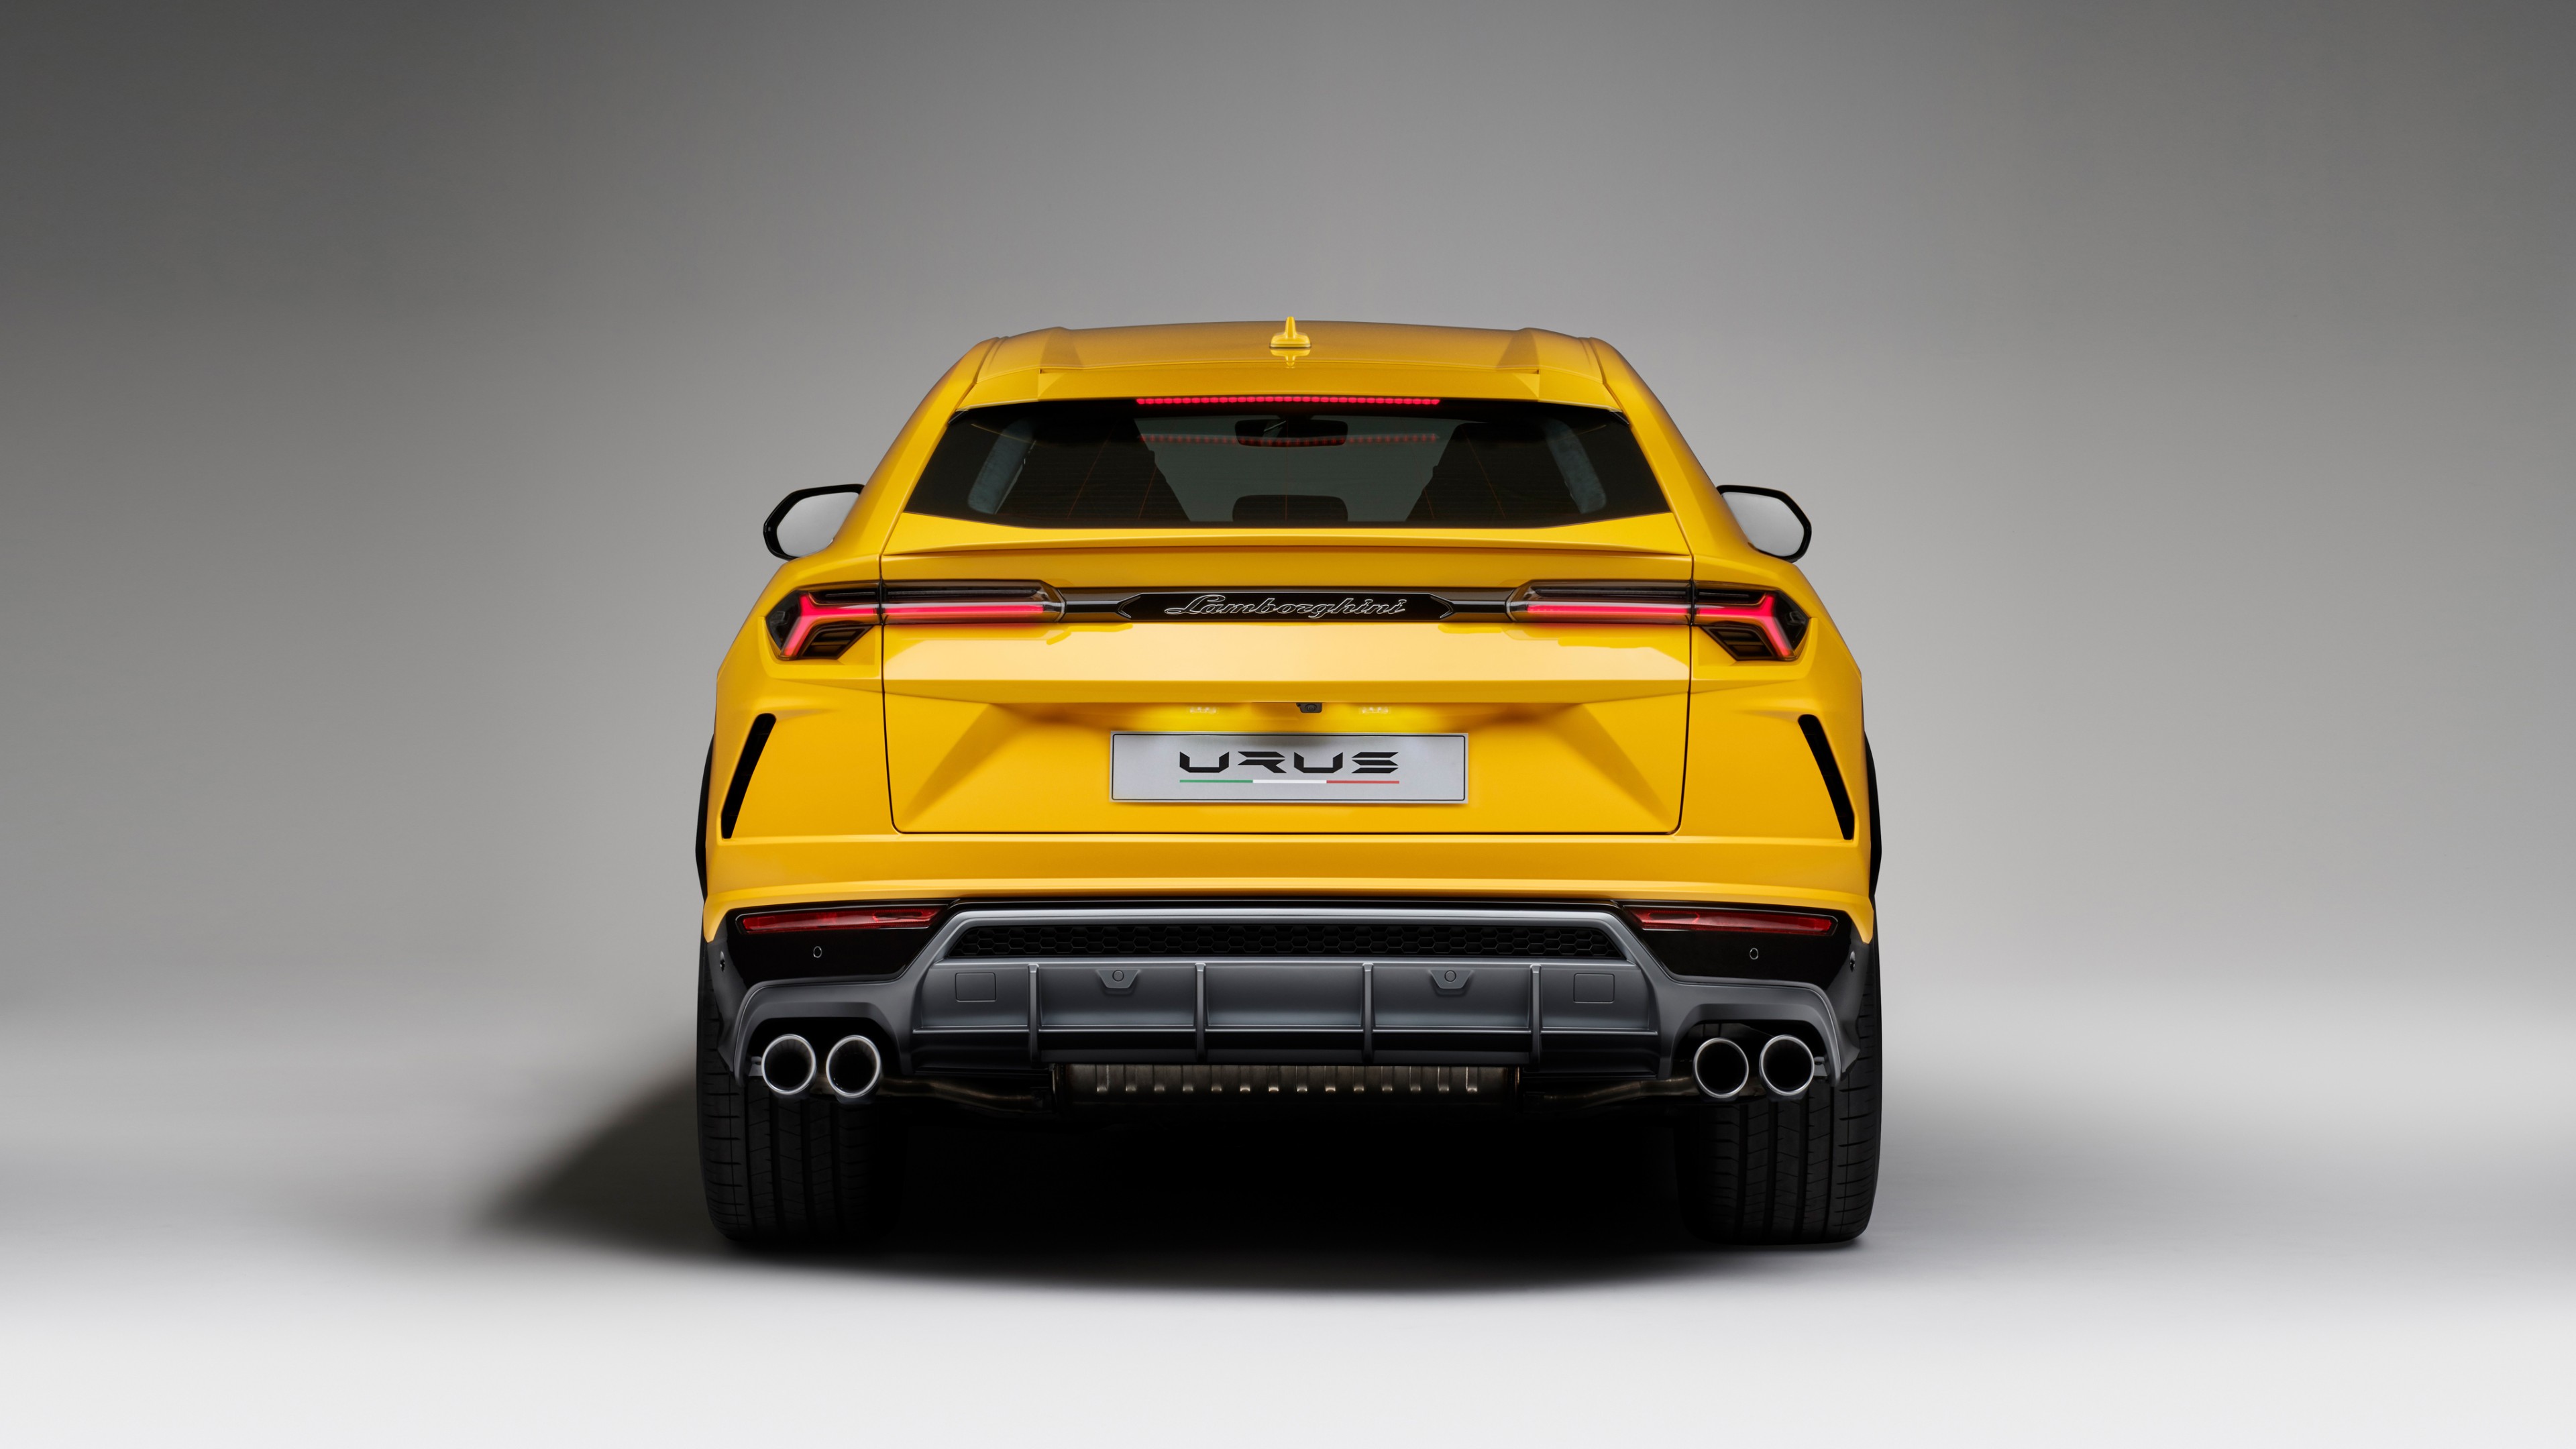 2018 Lamborghini Urus 4K 3 Wallpaper | HD Car Wallpapers | ID #9224